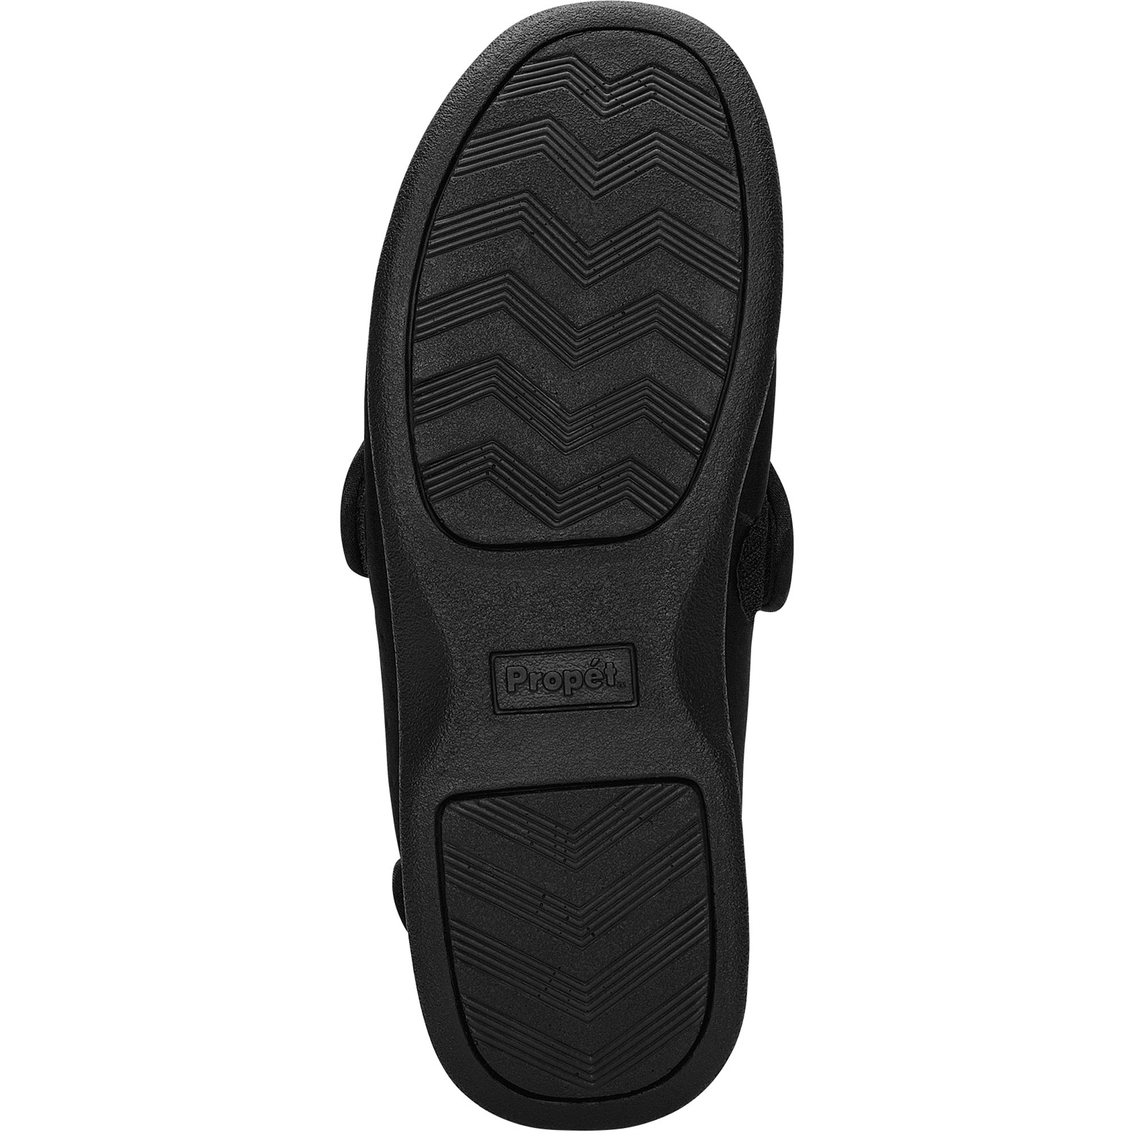 Propet Men's Cronus Comfort A5500 Shoes - Image 4 of 4